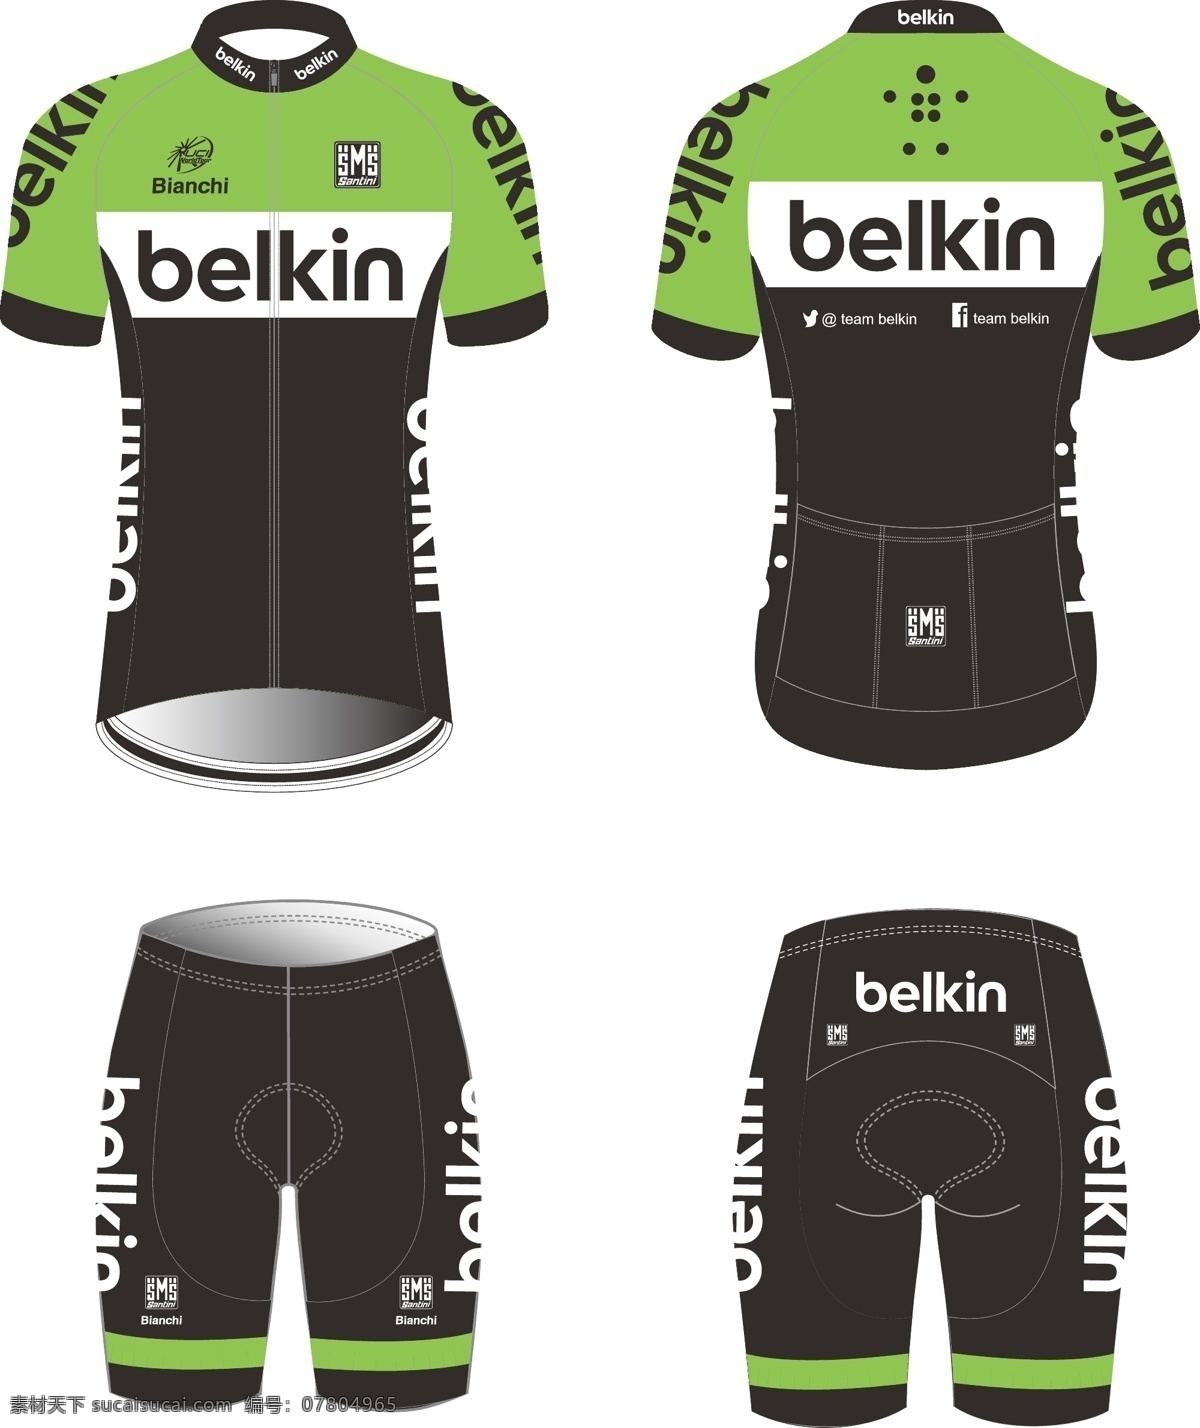 环法 骑 行 服 belkin 自行车比赛 服装设计